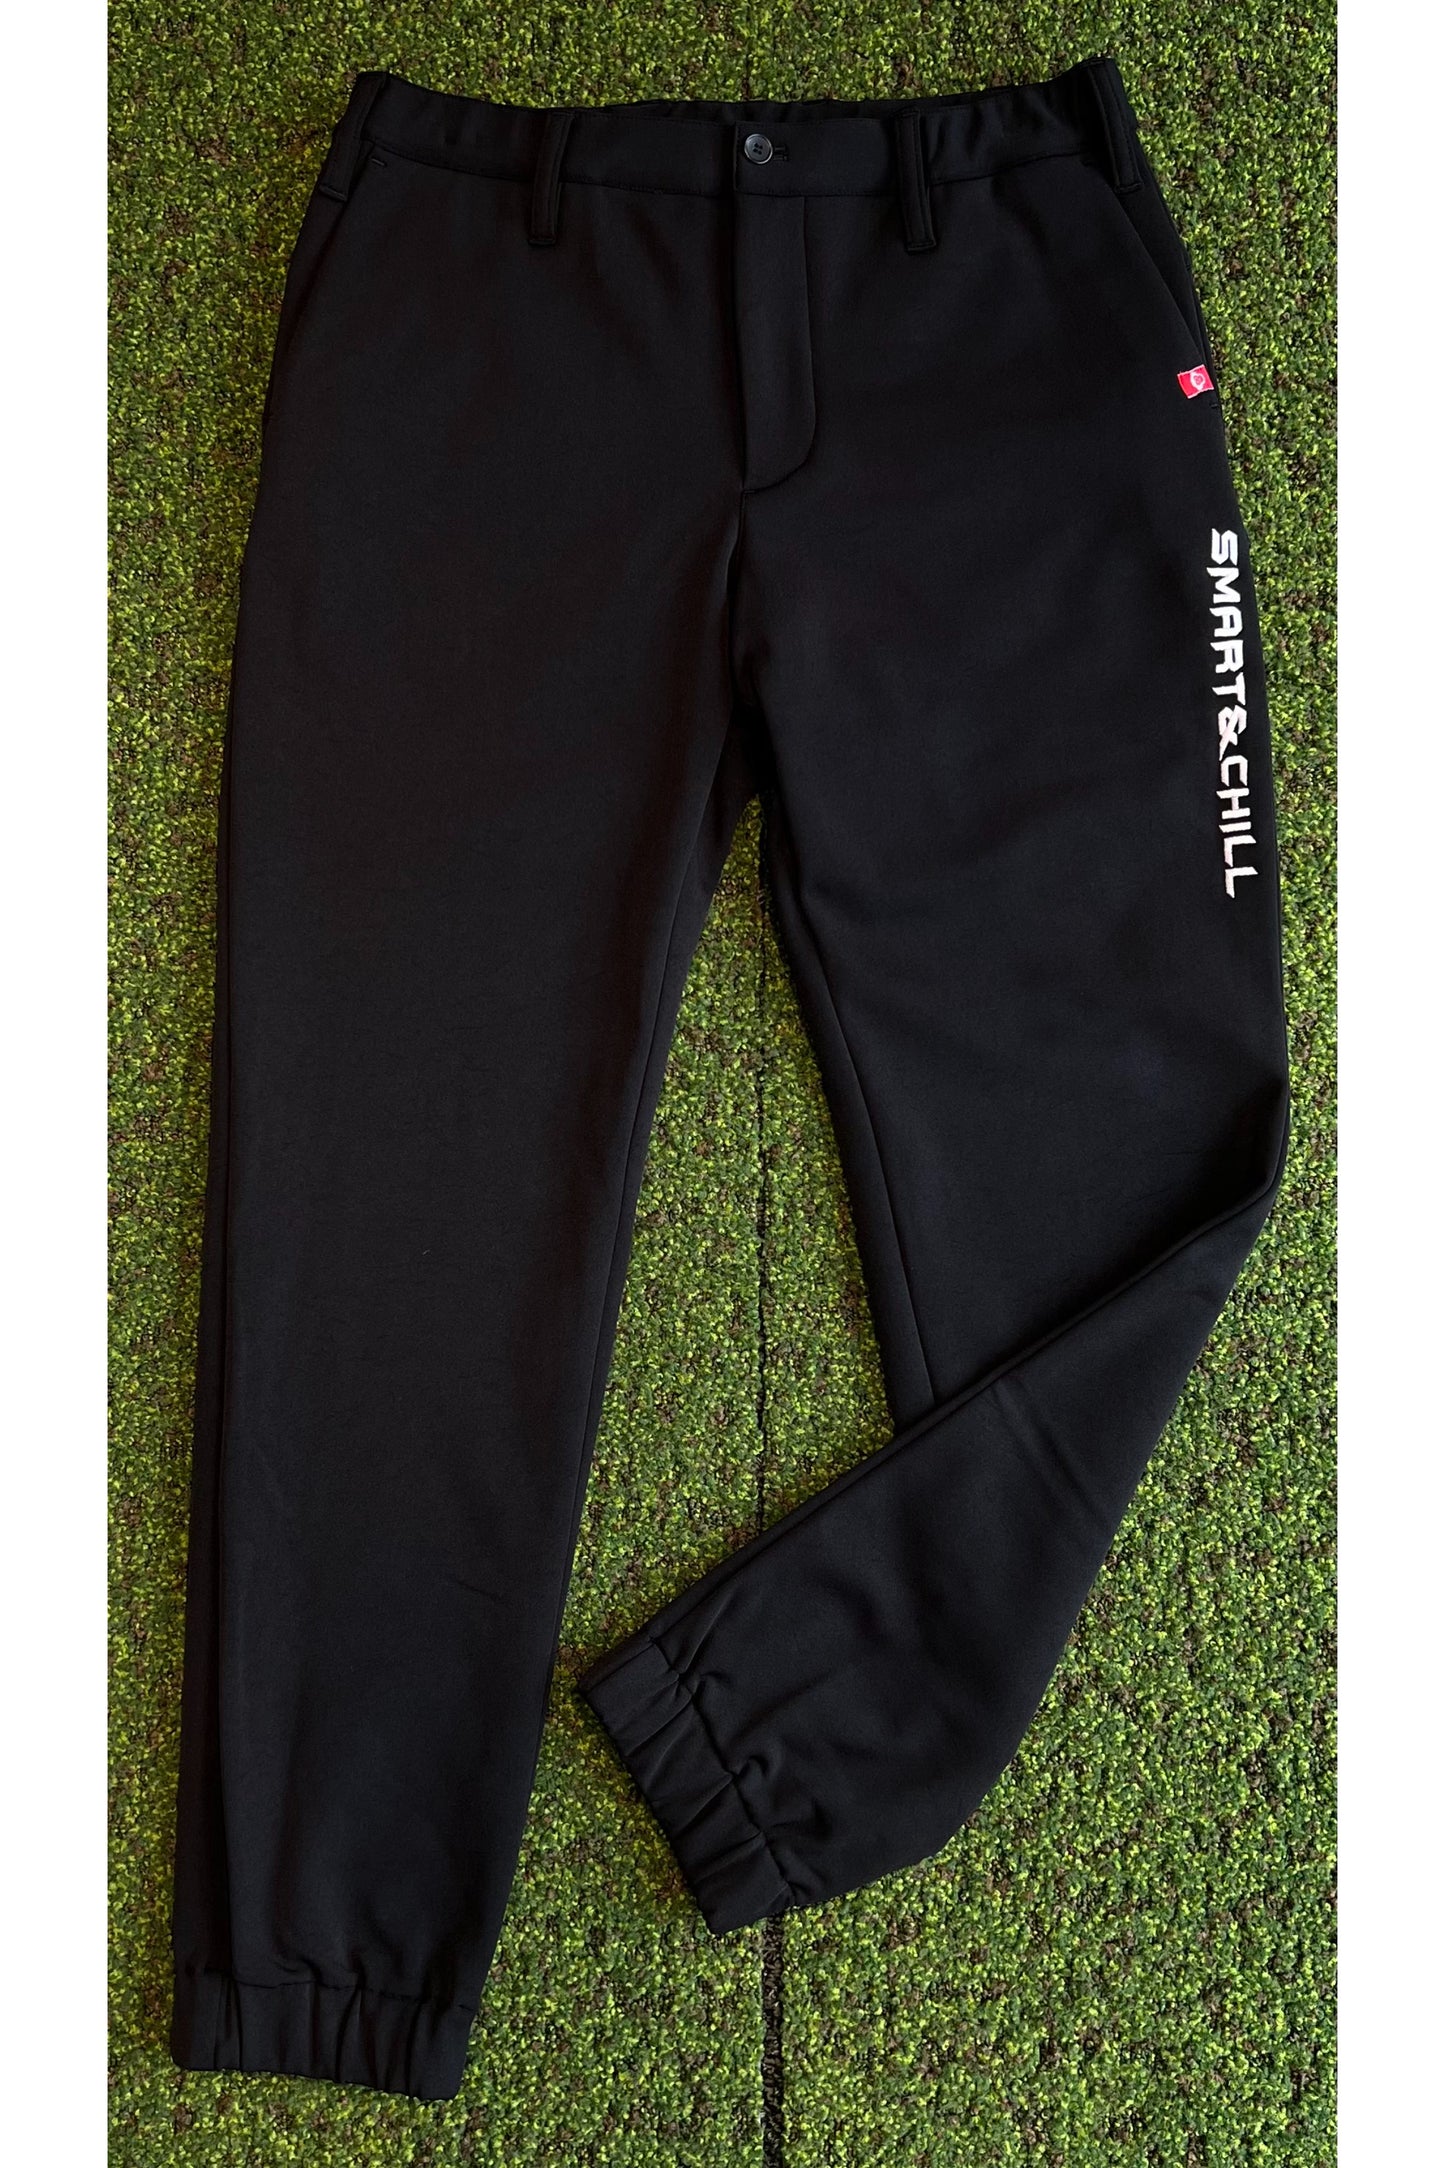 暖かさを追求した快適ストレッチ素材のメンズゴルフウェア「スマートアンドチル」の「裏起毛ジョガーパンツ」ブラックです。